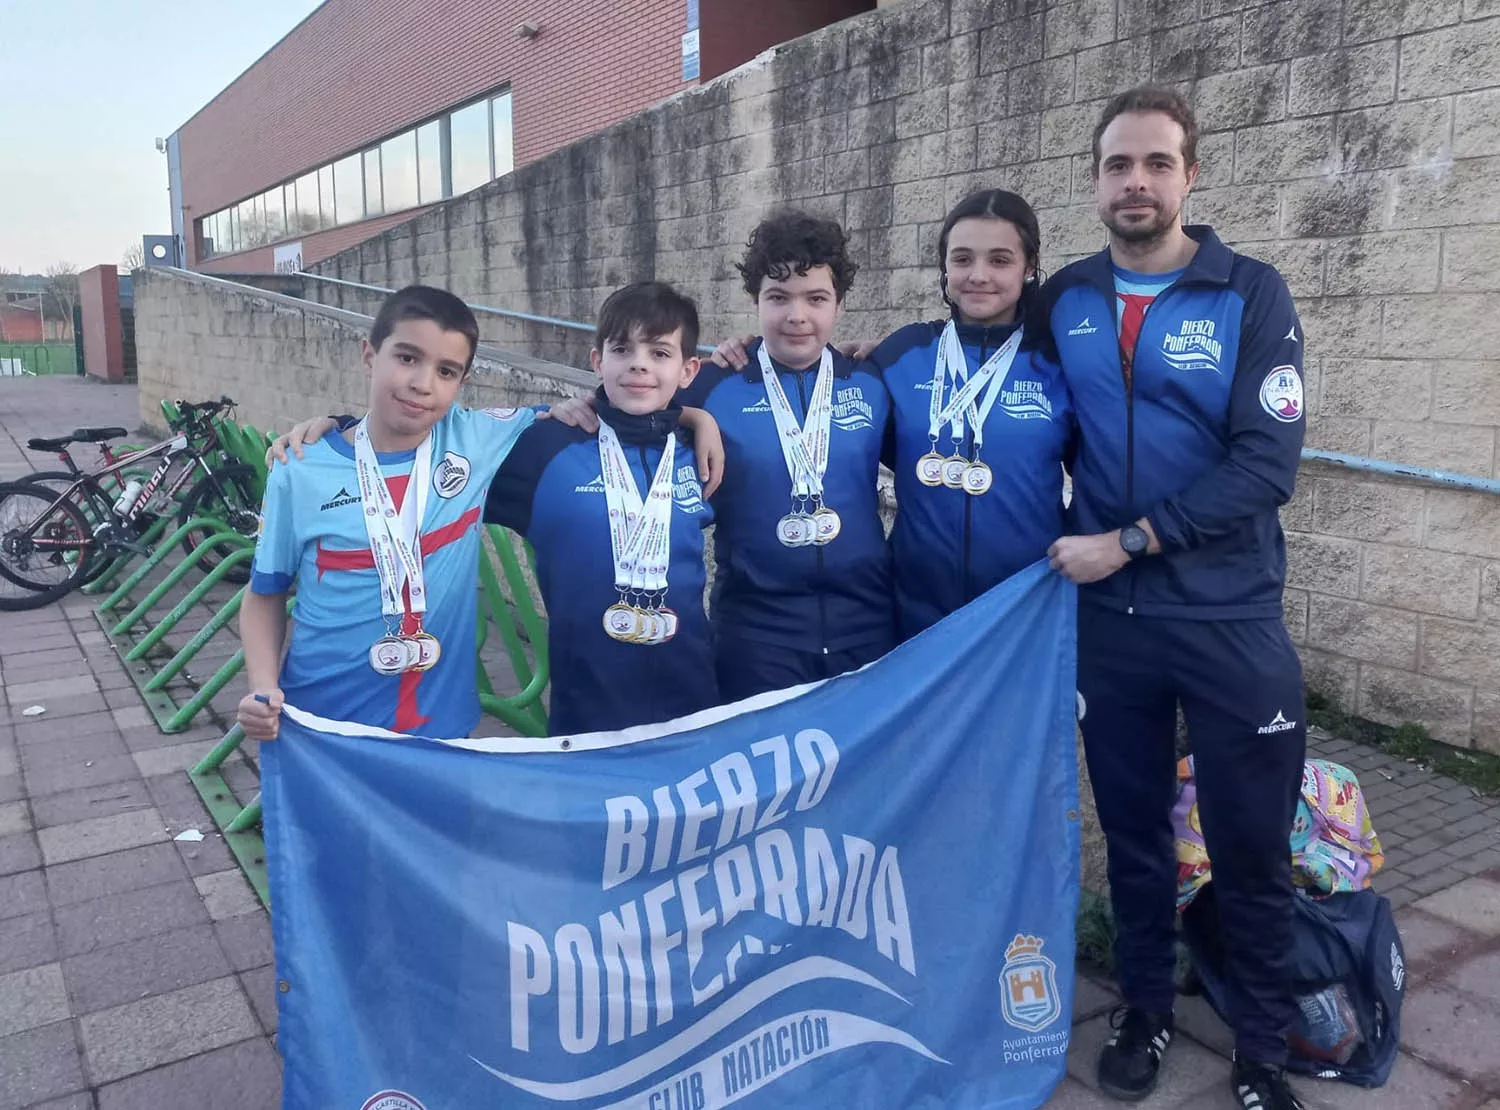 Los alevines del Club Natación Bierzo Ponferrada se alzan con 15 medallas en el Campeonato de Castilla y León 1